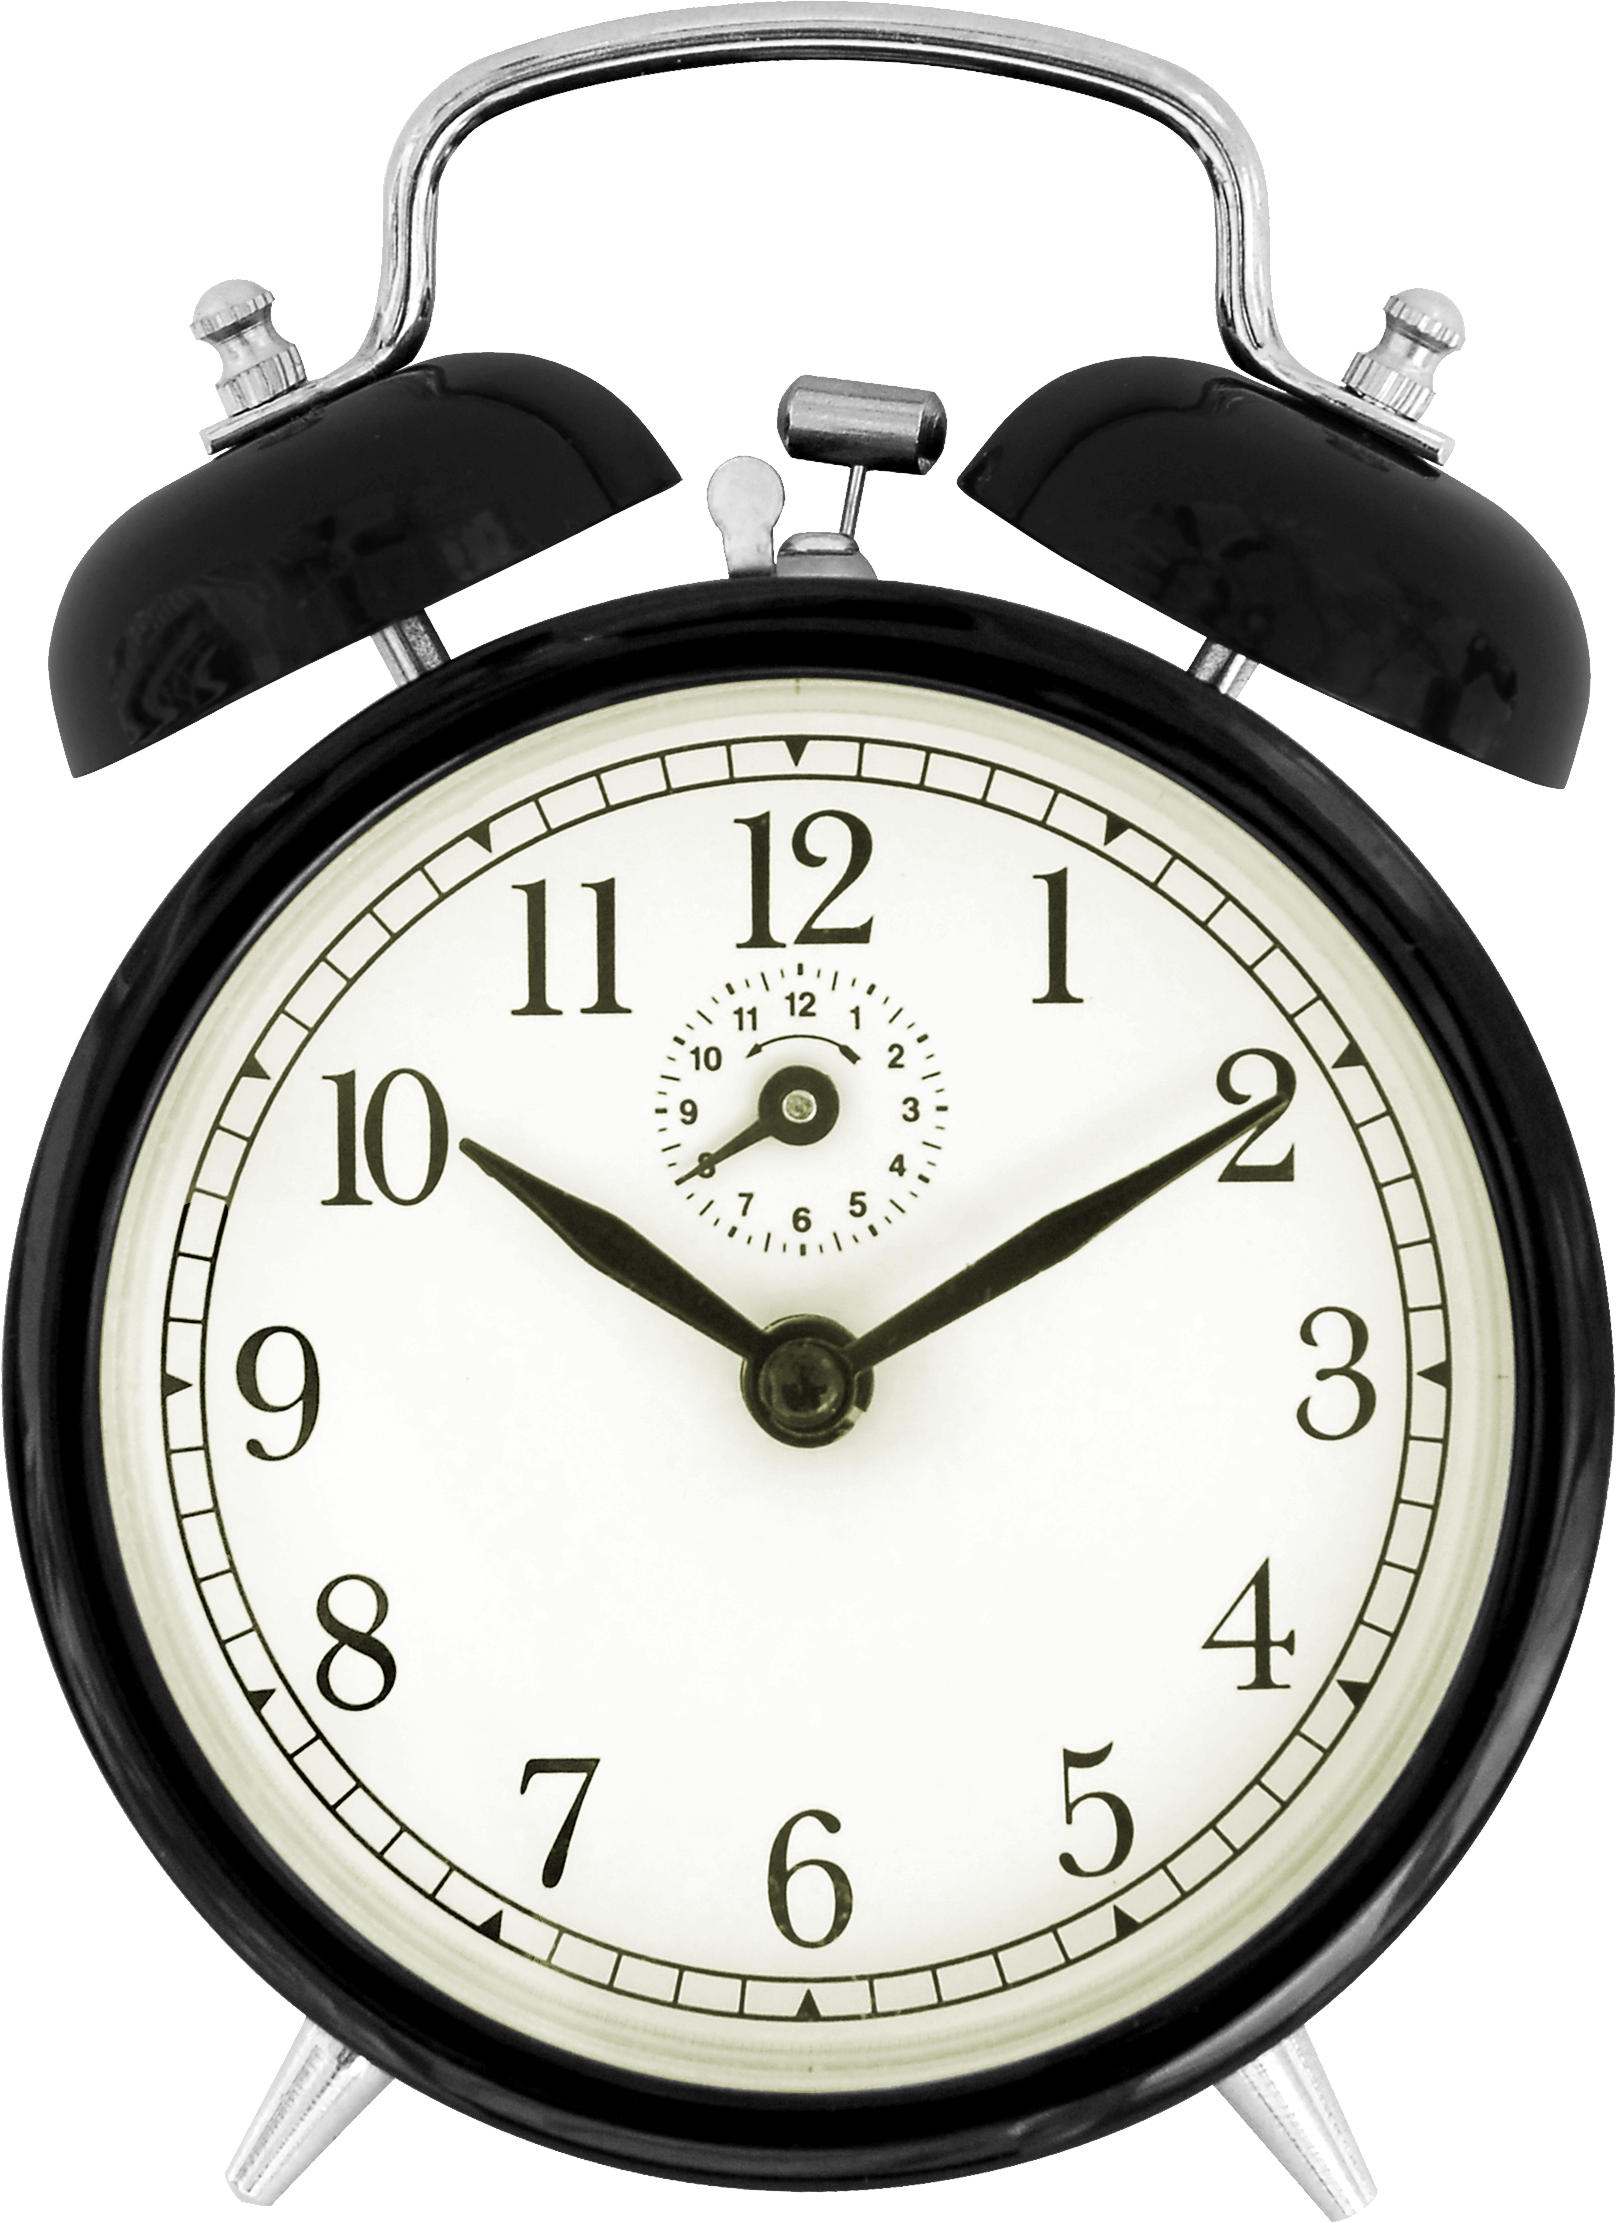 Alarm Analog Clock Free Download Image PNG Image